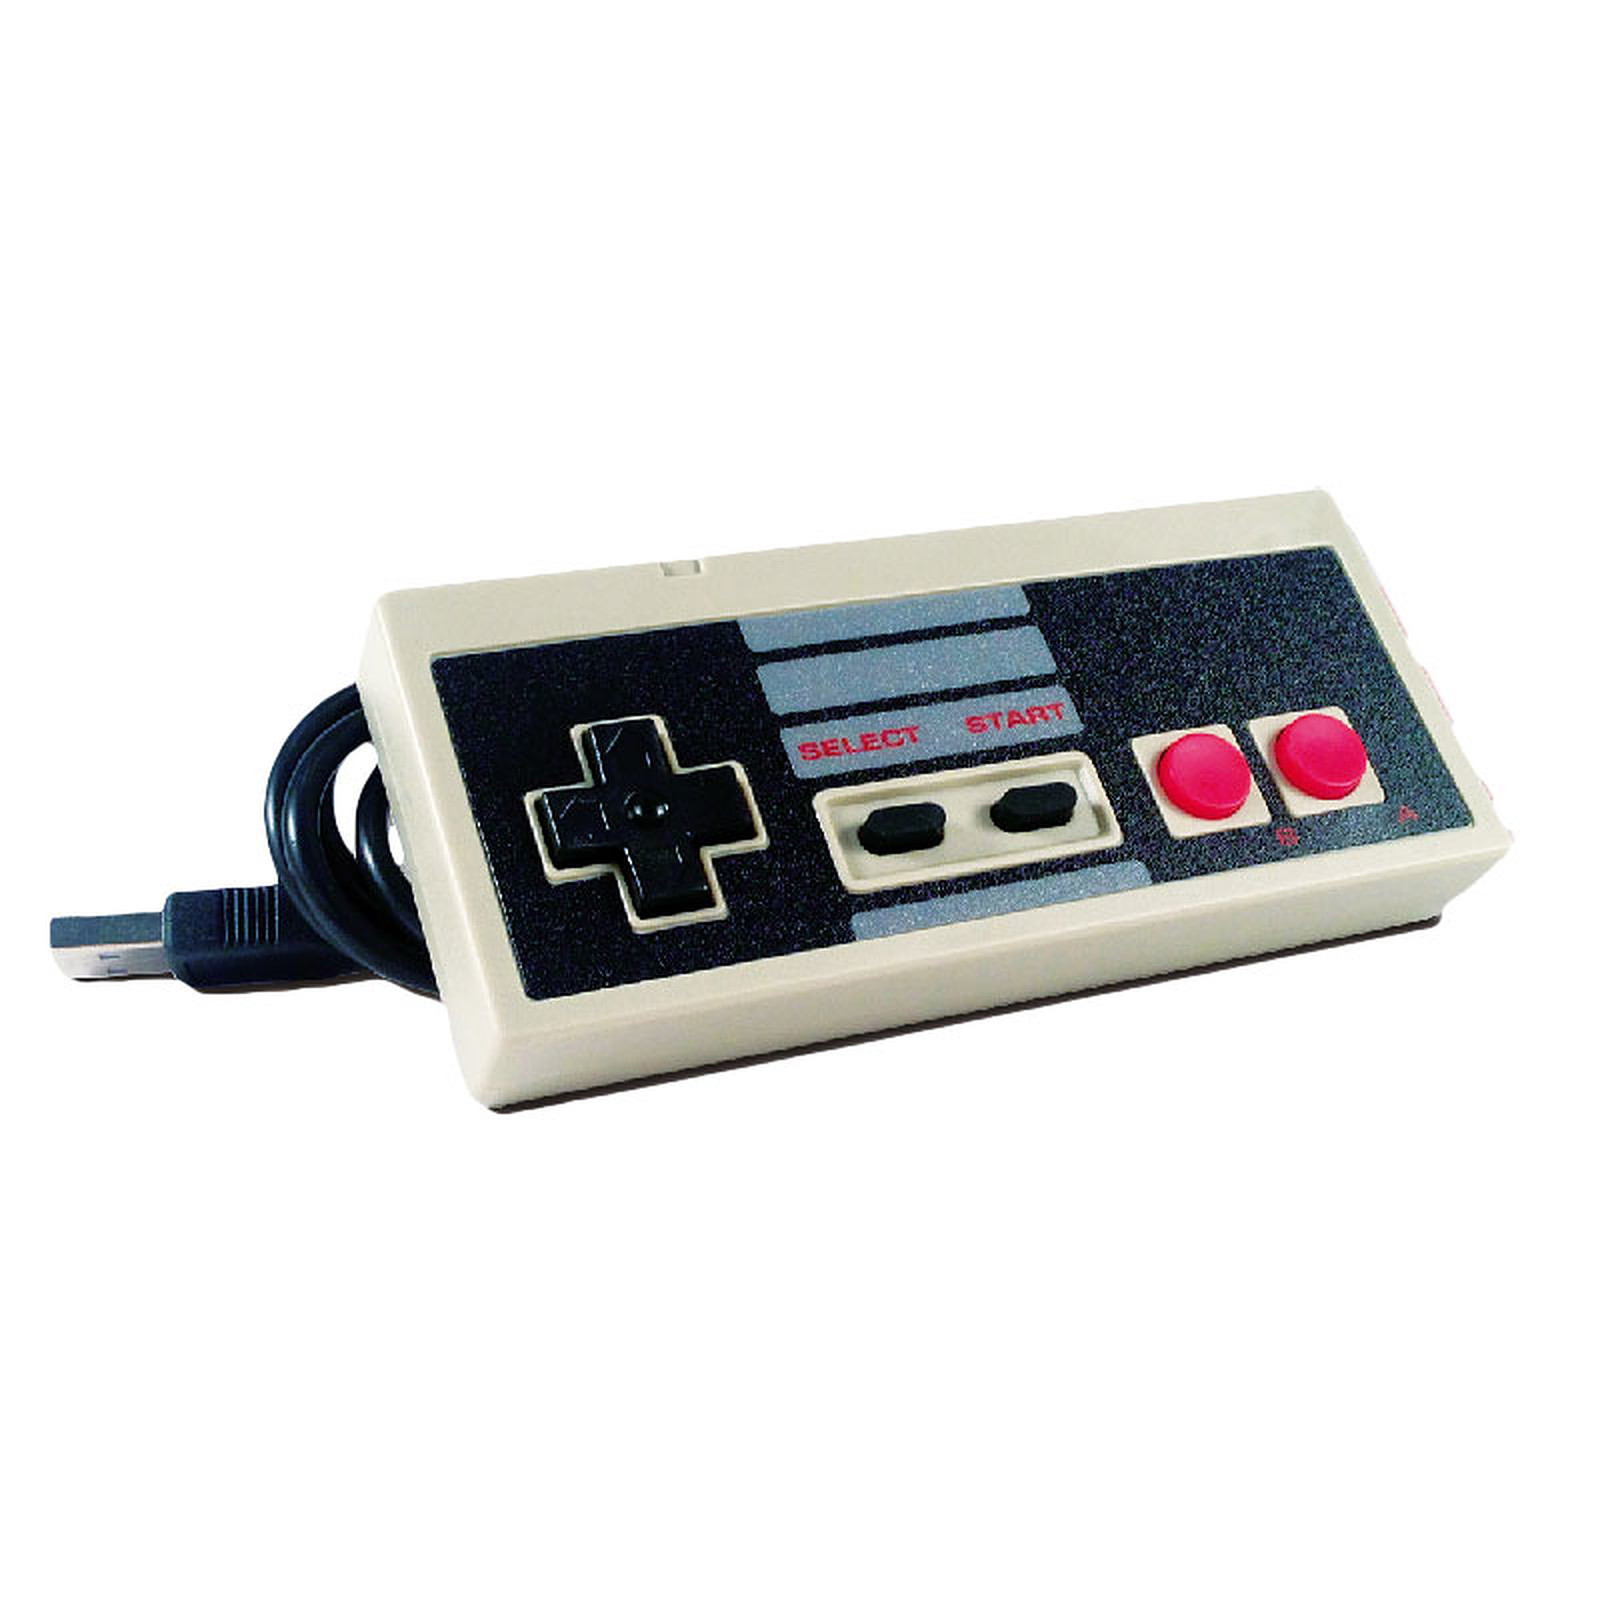 Manette USB pour retrogaming (Nintendo NES) - Manette PC Generique